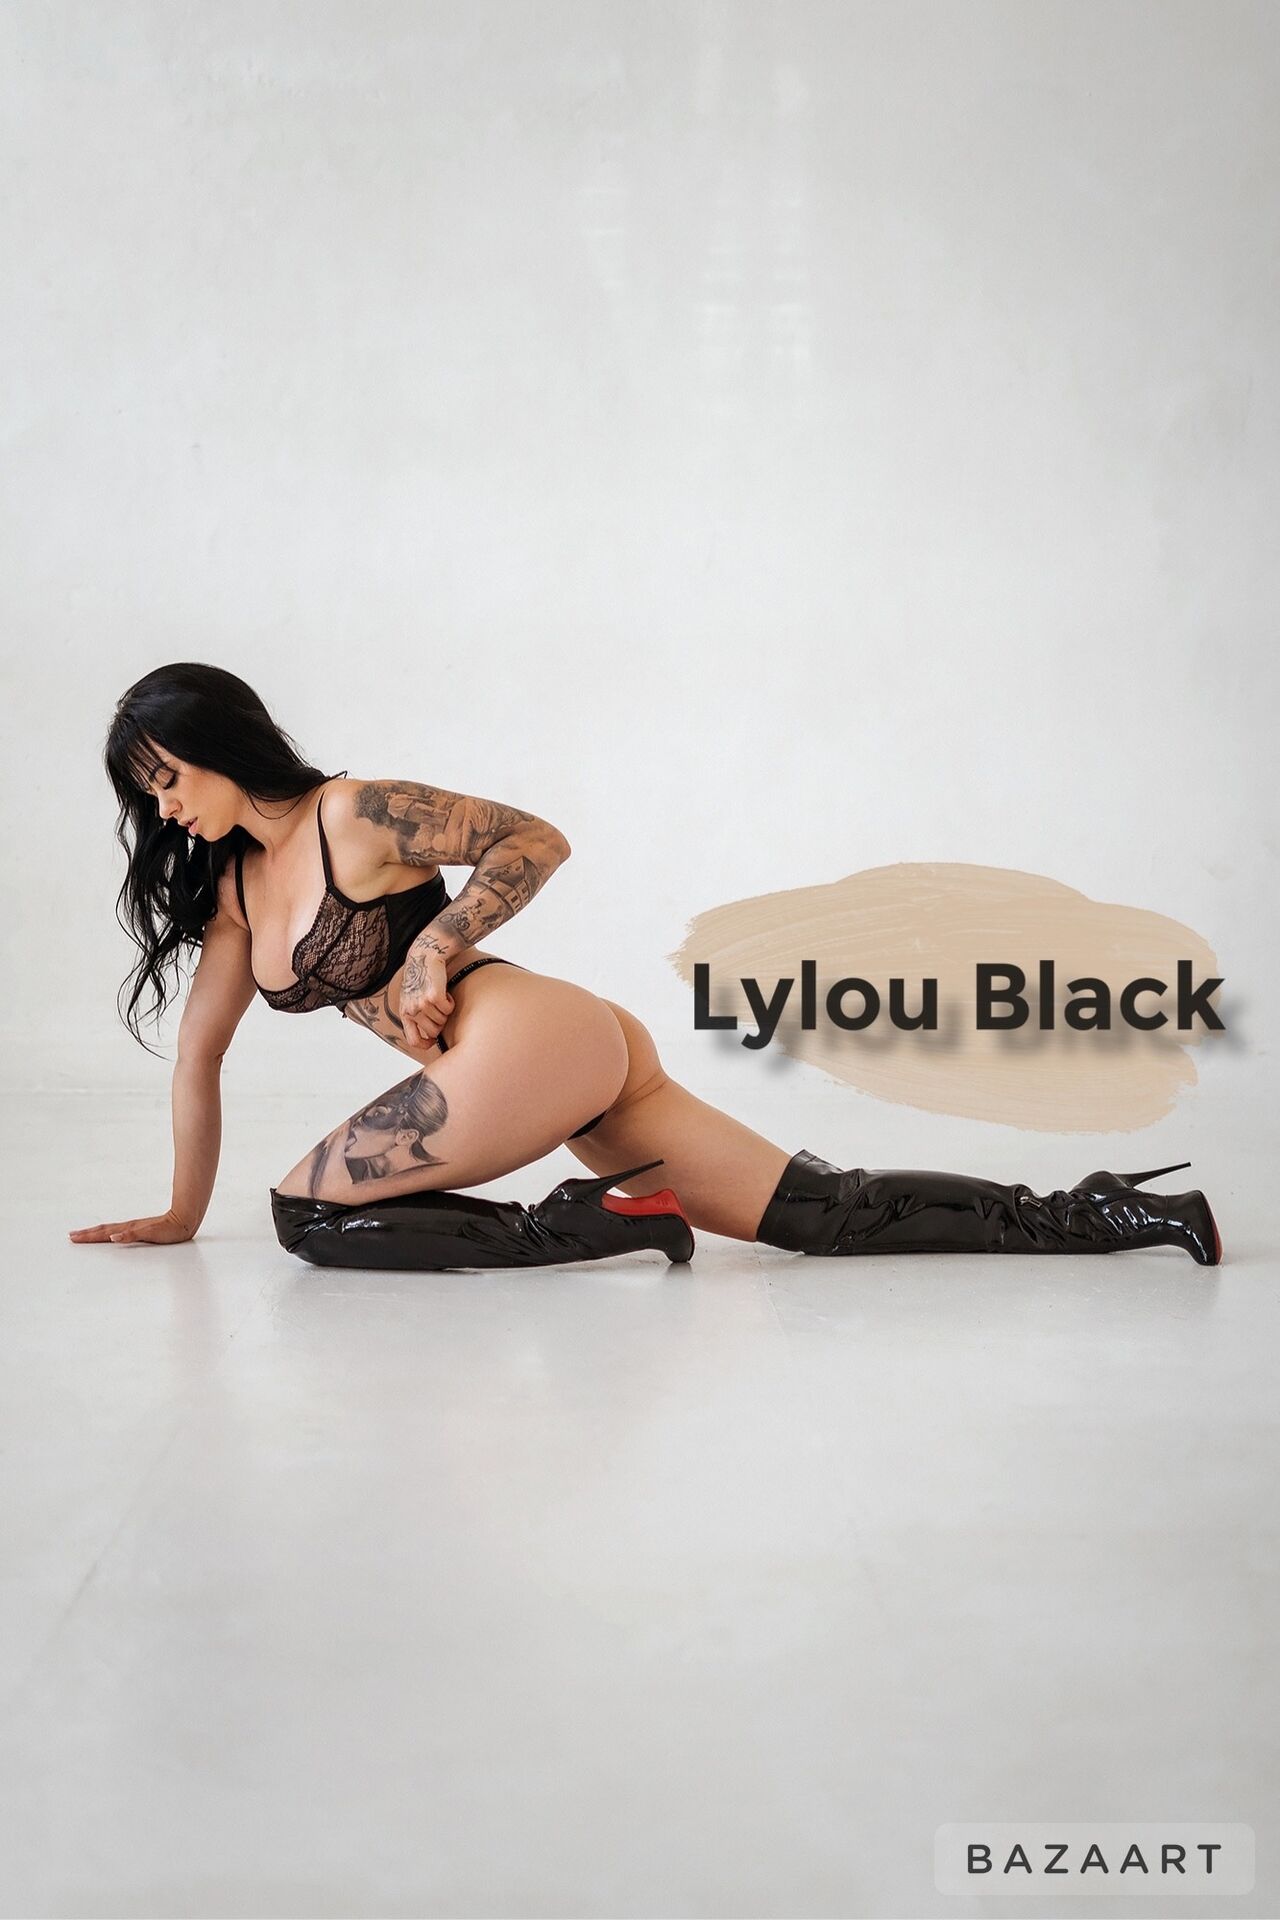 See Lylou Black profile